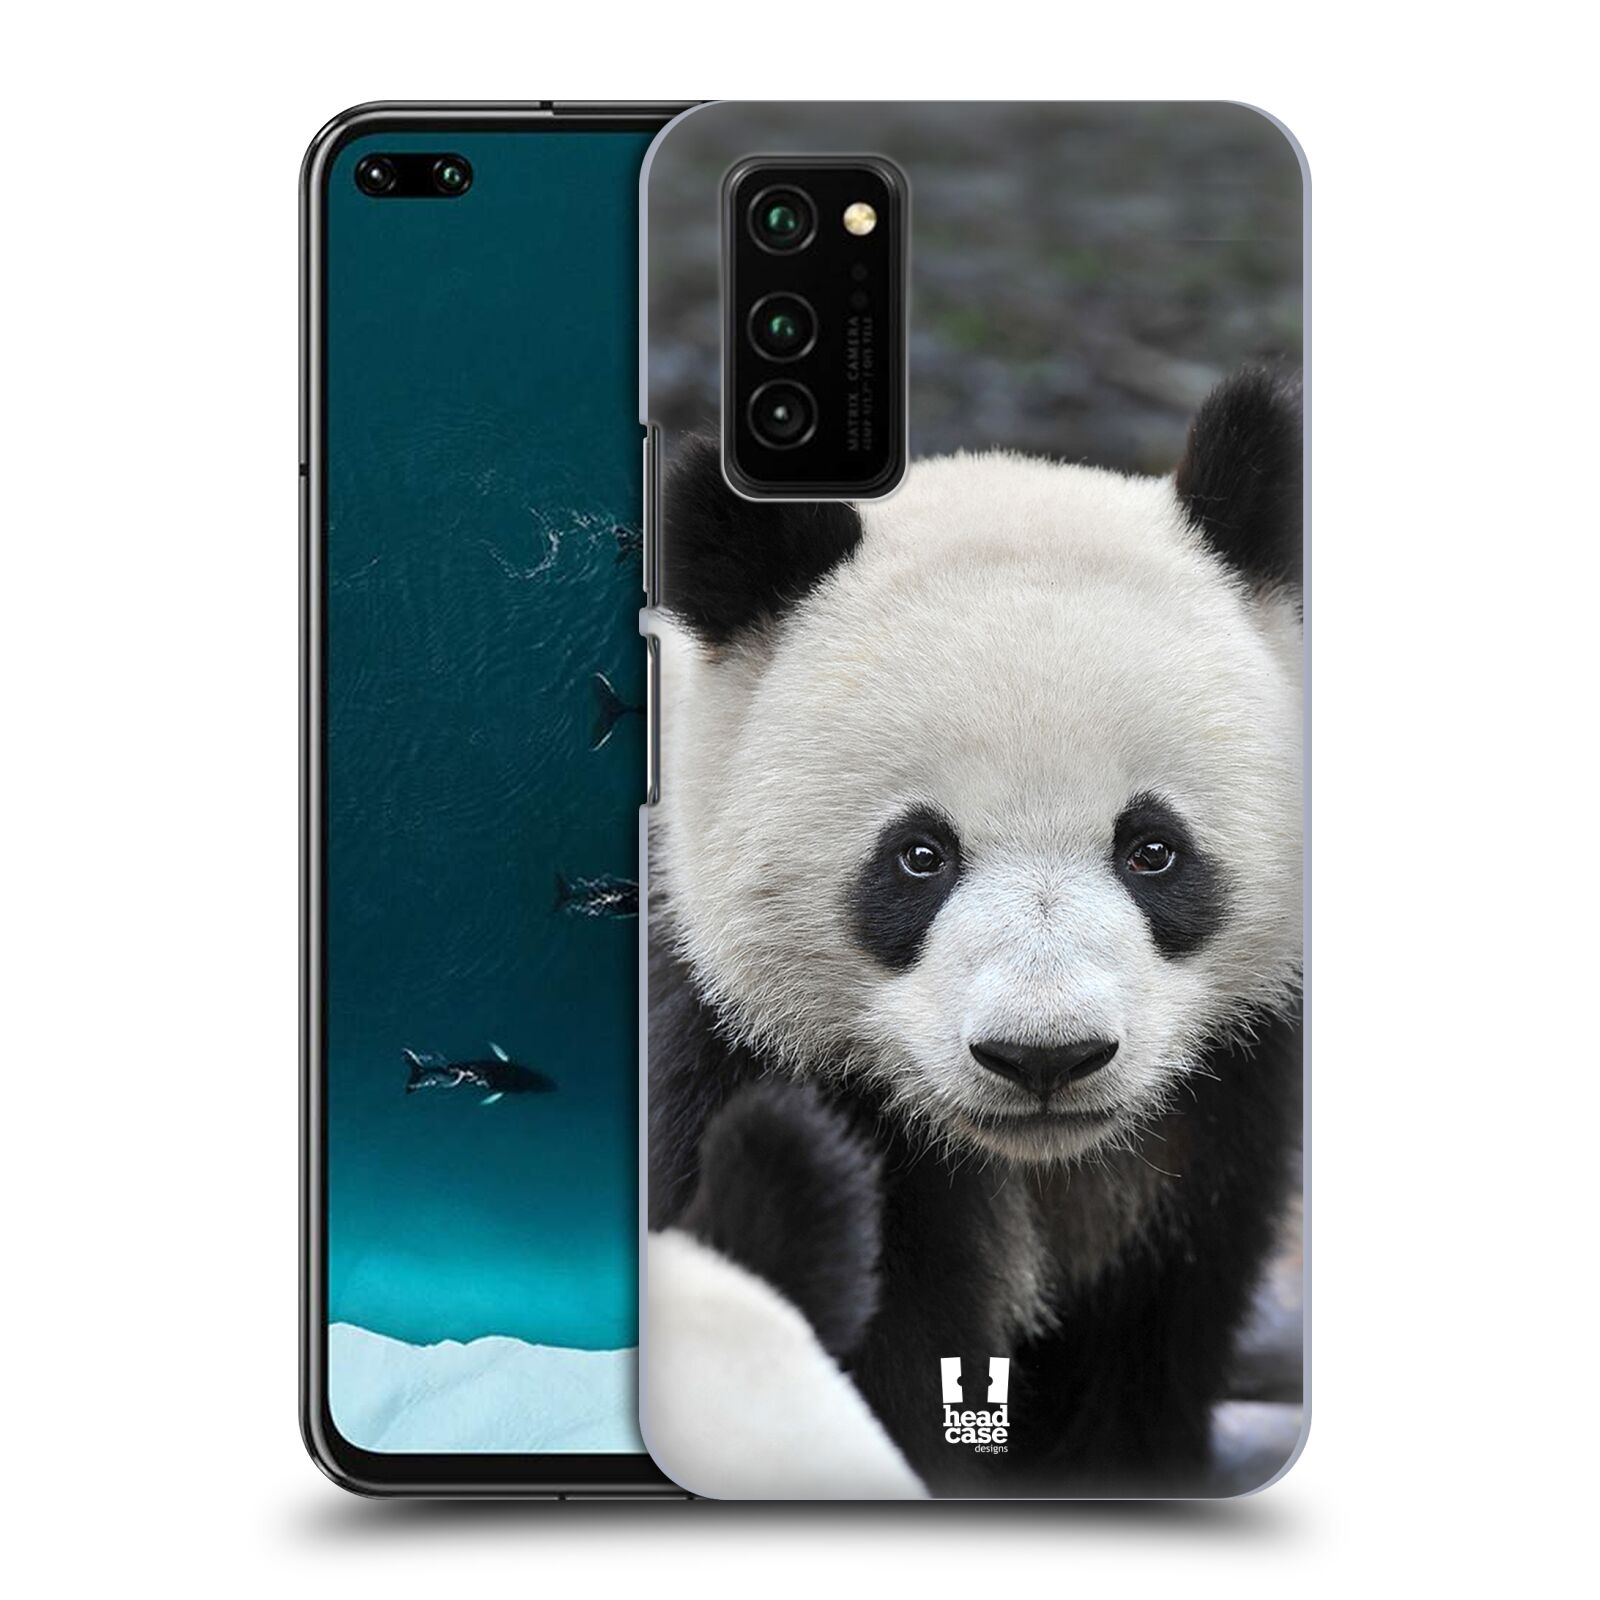 Zadní obal pro mobil Honor View 30 - HEAD CASE - Svět zvířat medvěd panda